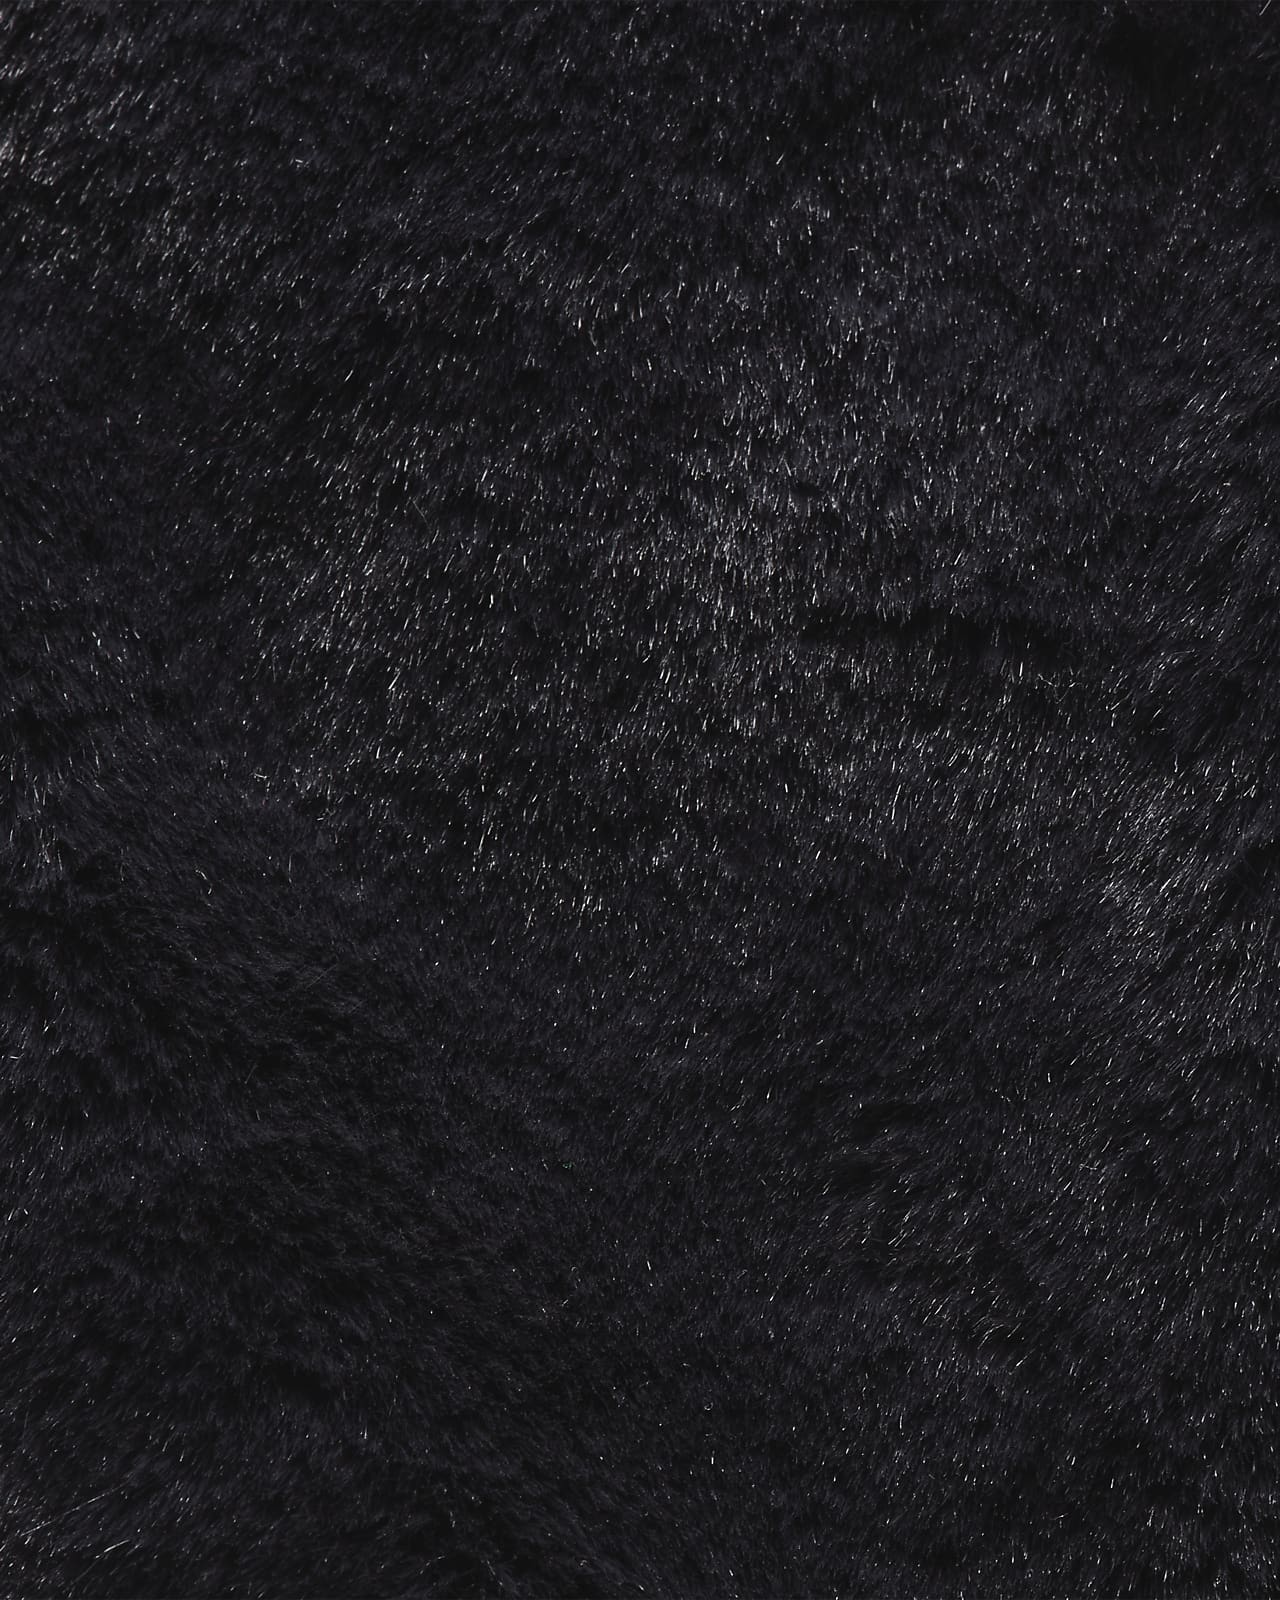 Nike Sportswear Faux Fur Tote Bag-Black